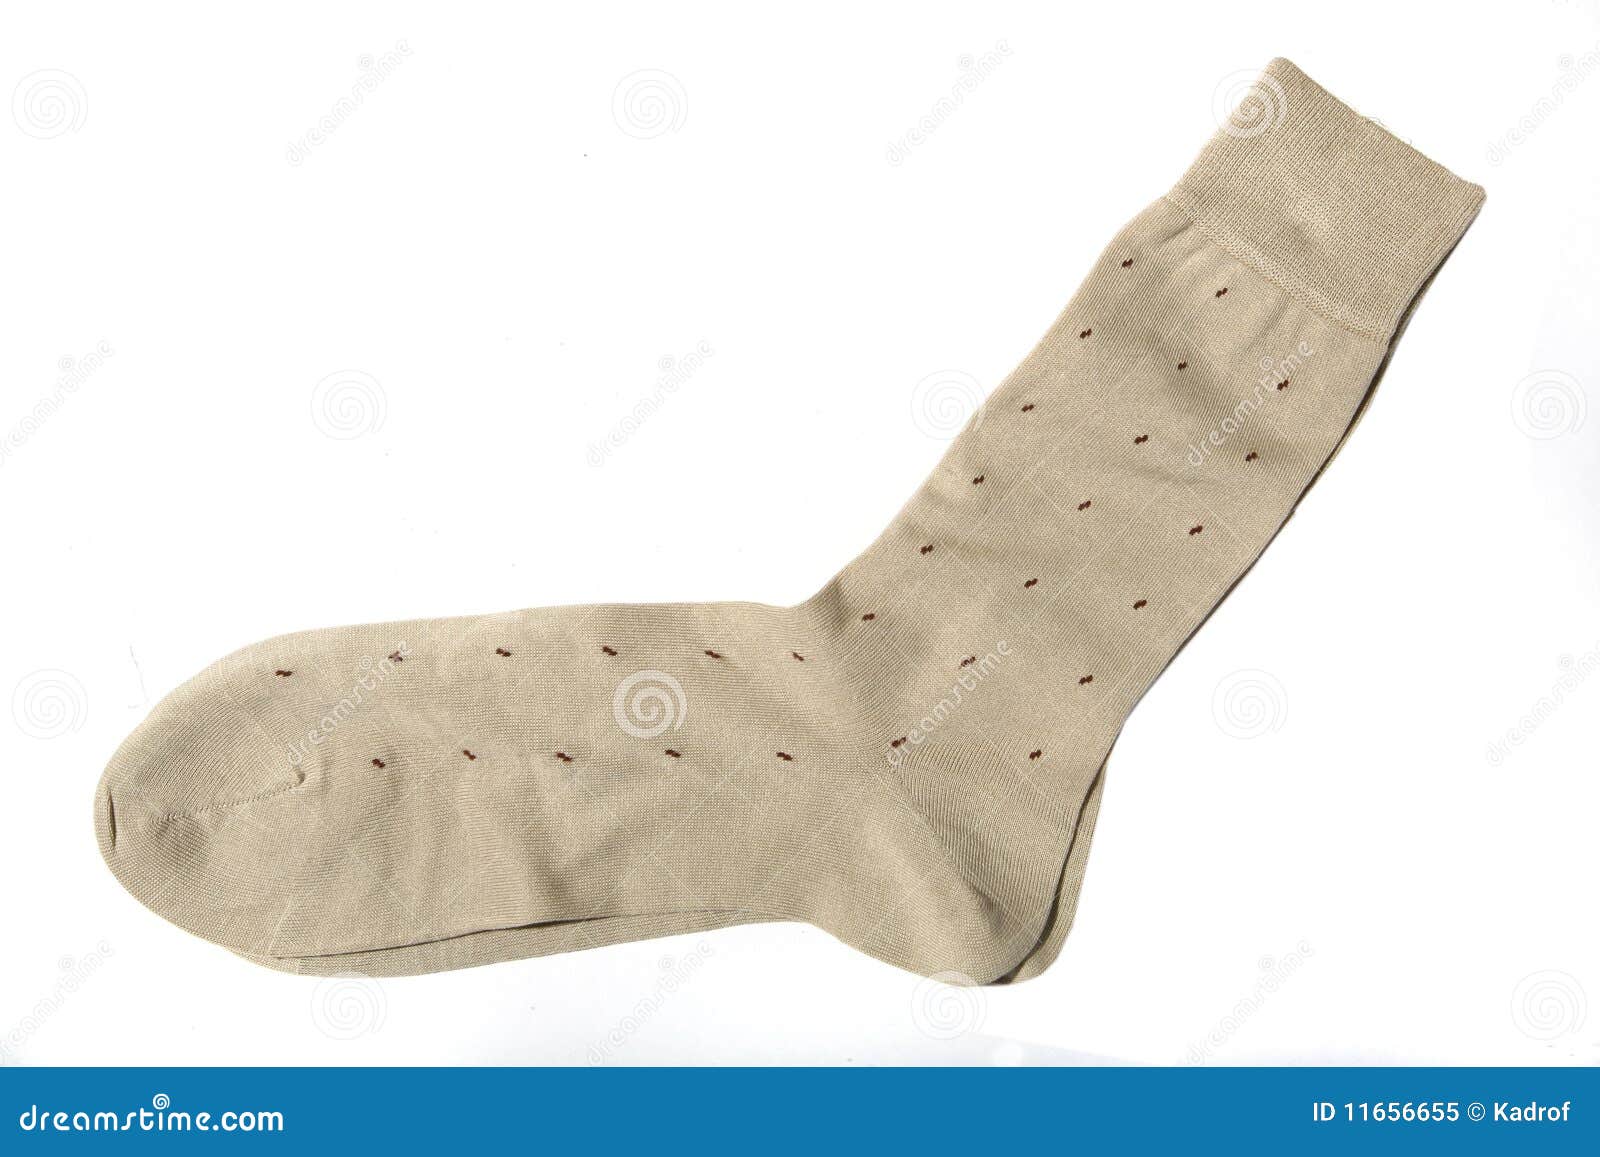 trouser socks